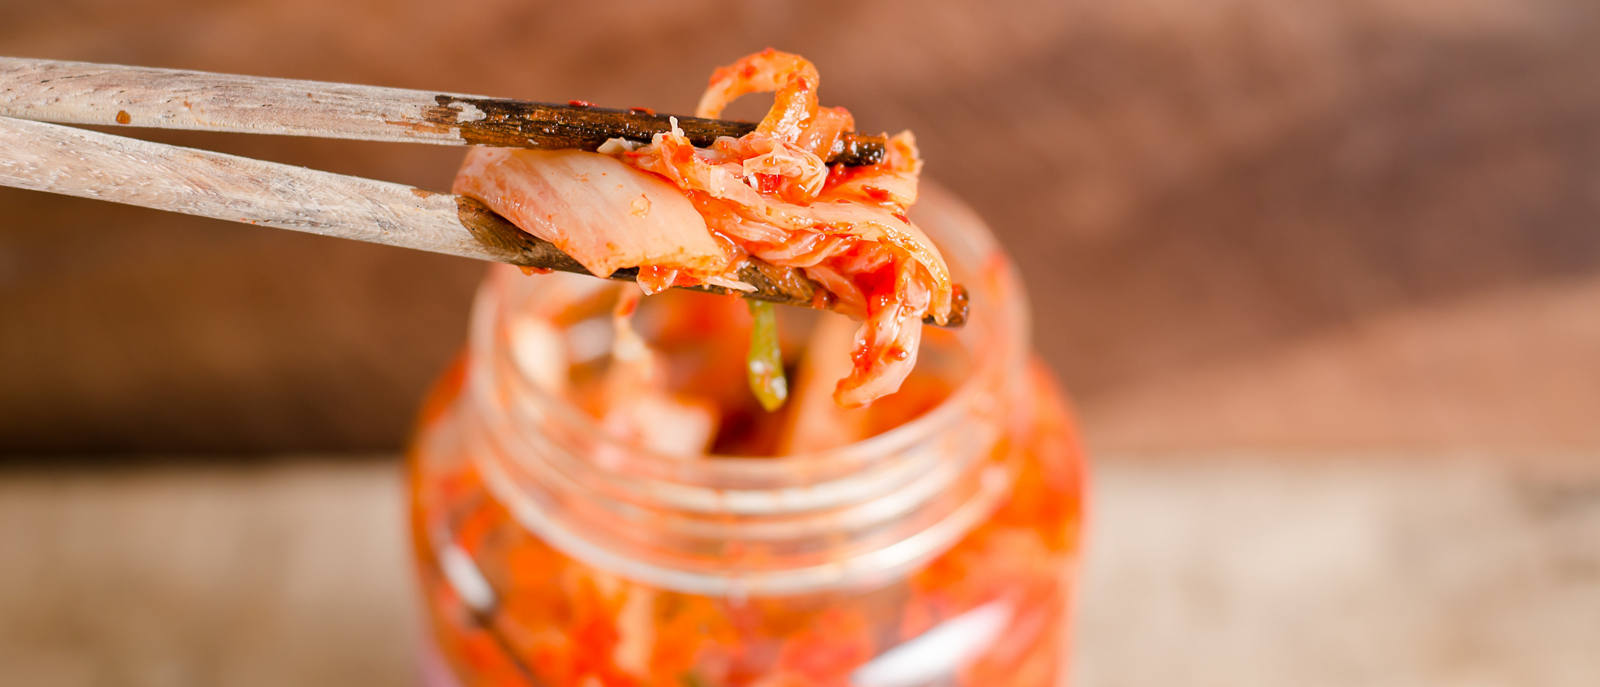 Recette de kimchi: la fermentation en toute simplicité